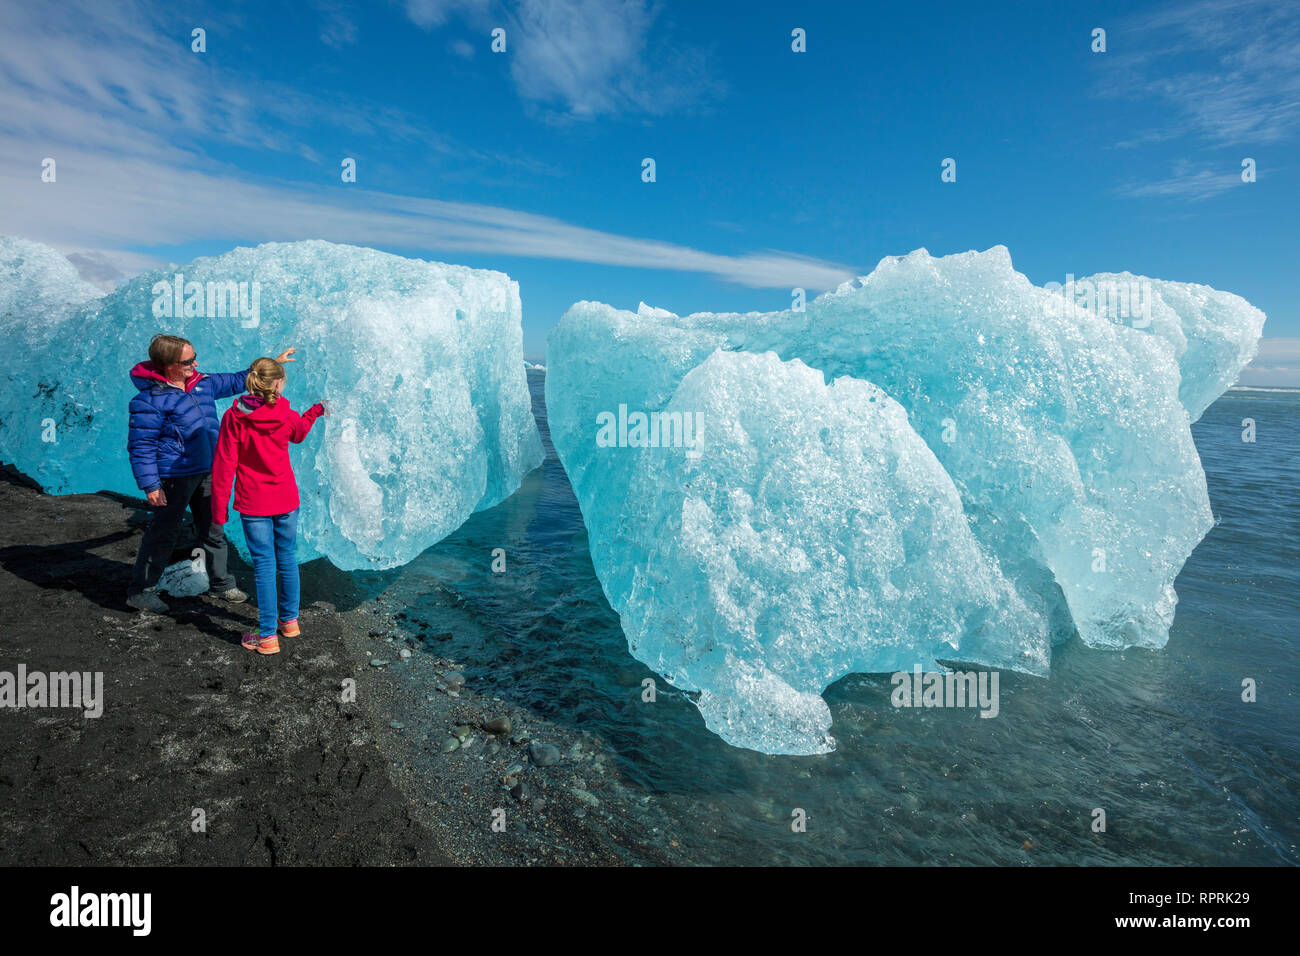 Las personas examinando Breidamerkursandur icebergs en la playa de arena negra, debajo de Jokulsarlon. Sudhurland, sudeste de Islandia. Foto de stock